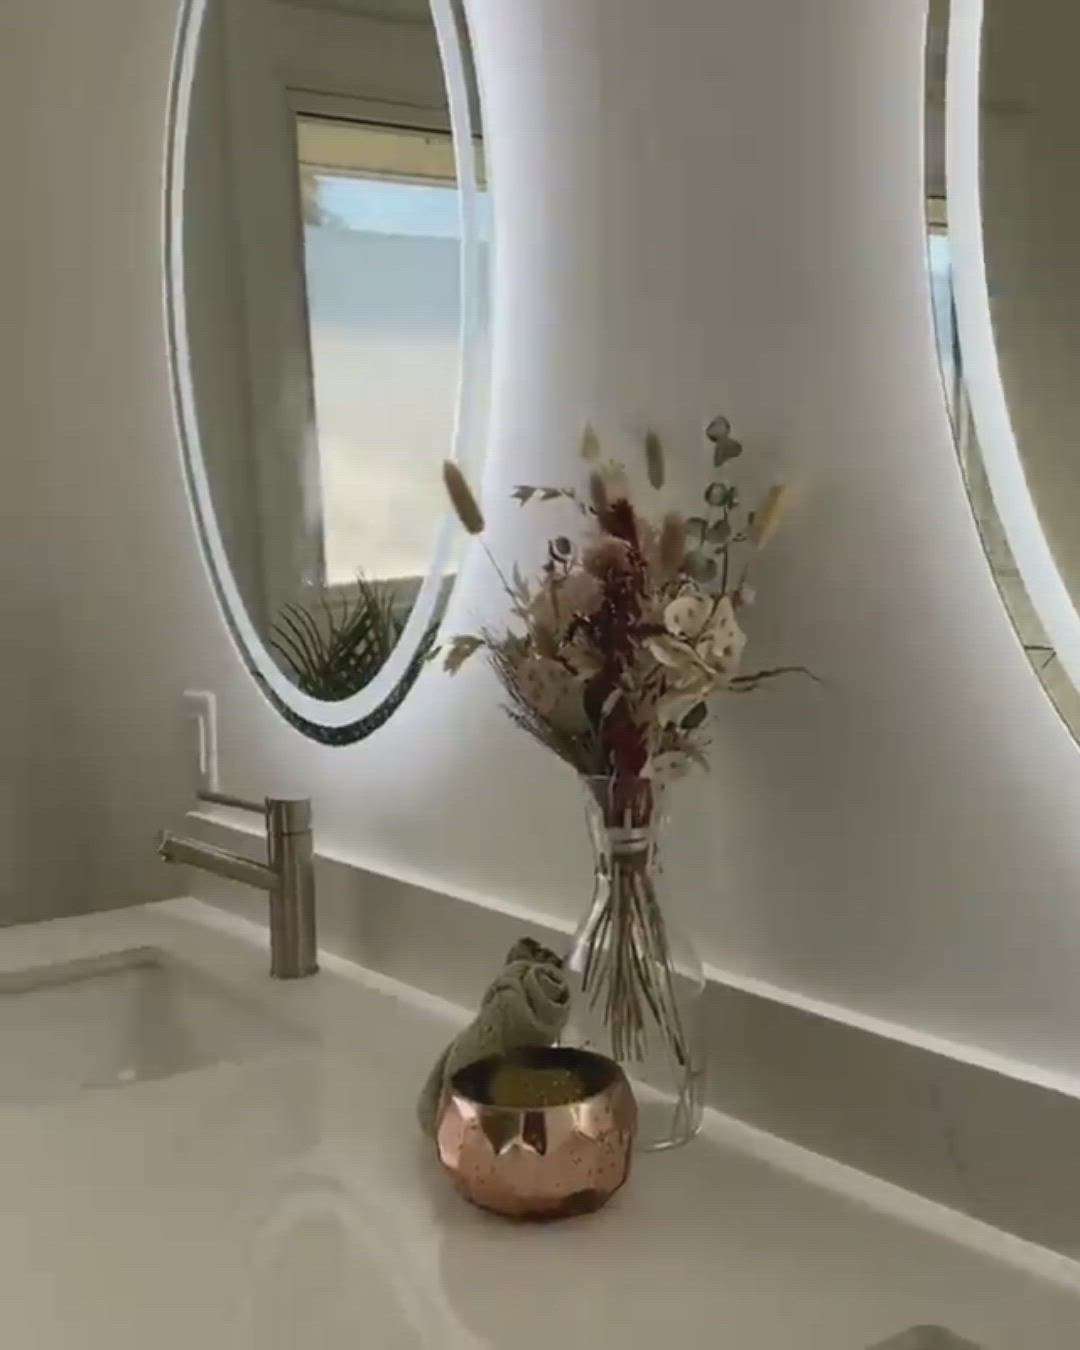 Led Sensor Mirror
#mirrorunit #LED_Sensor_Mirror #GlassMirror #blutooth_mirror #wall_mirror_design #LED_Mirror #mirrordesign #ledsensormirror #LED_Mirror #ledmirror #touchlightmirror #touchmirror #touchsensormirror #vanity #vanitydesigns #vanityideas #dressingunit #dressingroom #WardrobeIdeas #WardrobeDesigns #CustomizedWardrobe #mirrorwardrobe #wardrobeinteriors #homerenovation #homeinteriordesign #HomeAutomation #InteriorDesigner